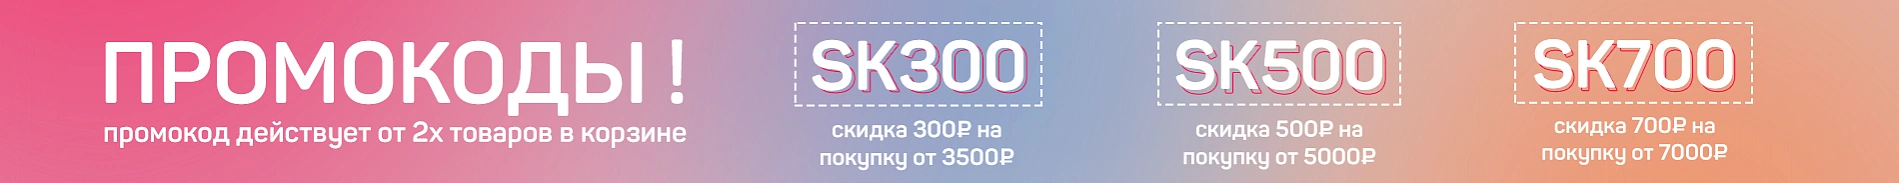 скидка по промокоду 300/500/700